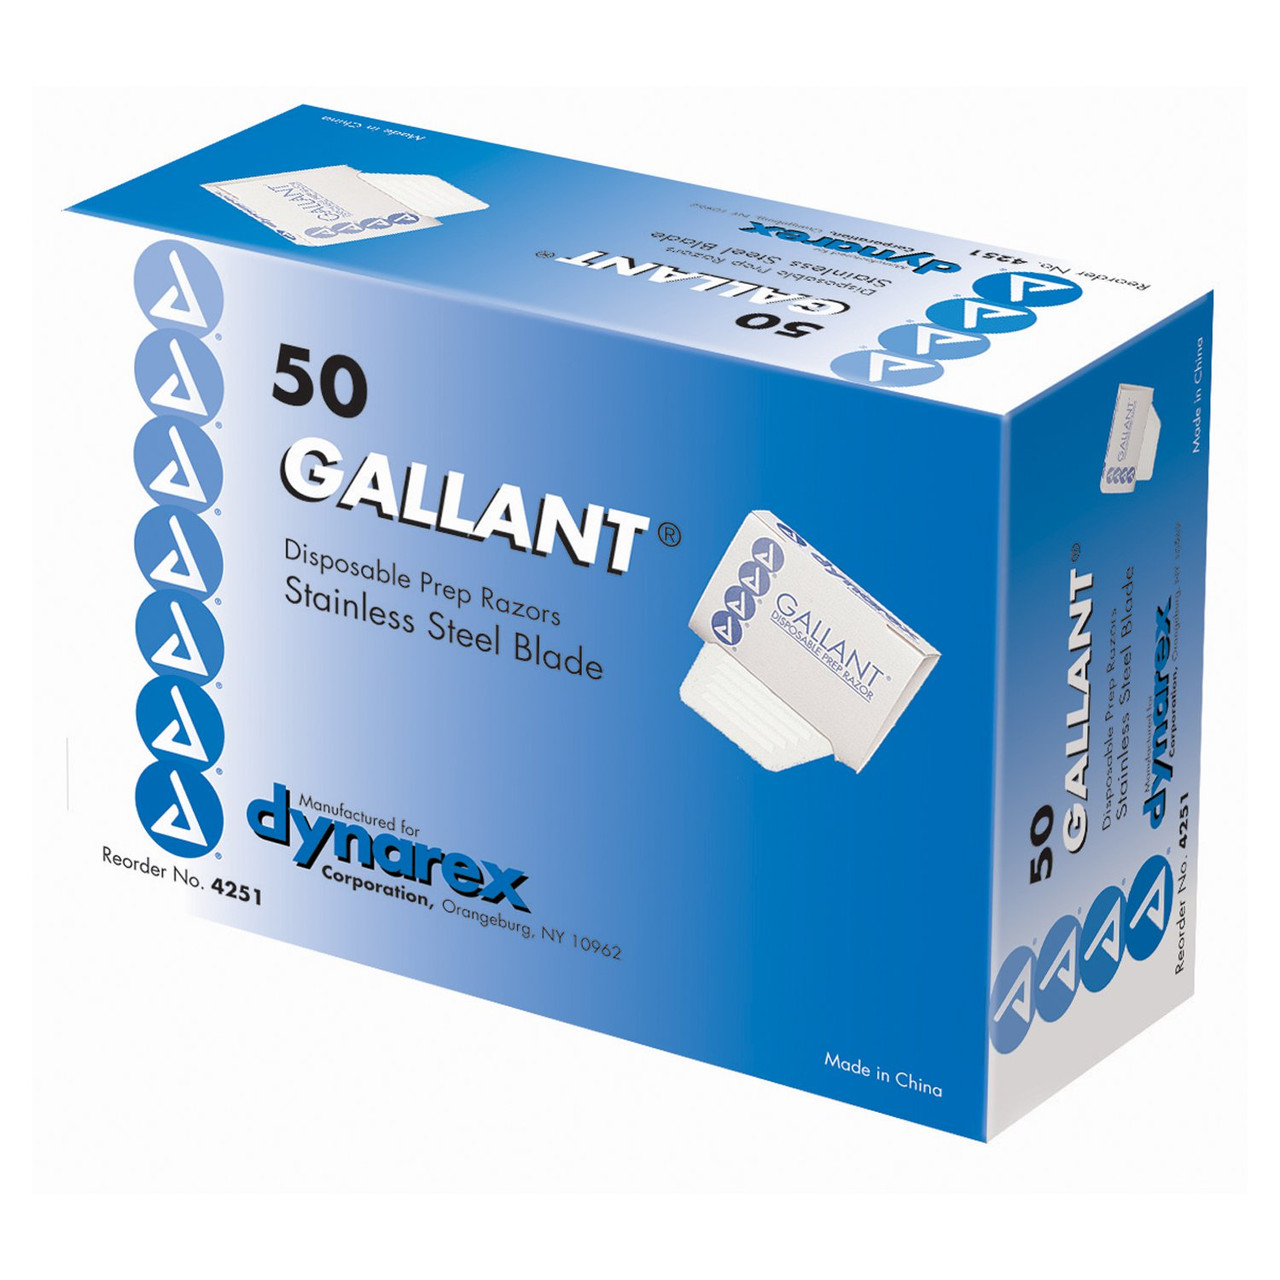 Dynarex Gallant Disposable Prep Razors. Бритва медицинская Gallant. Gallant Страна производителя. Balg14 Gallant. Лабораторные расходные материалы